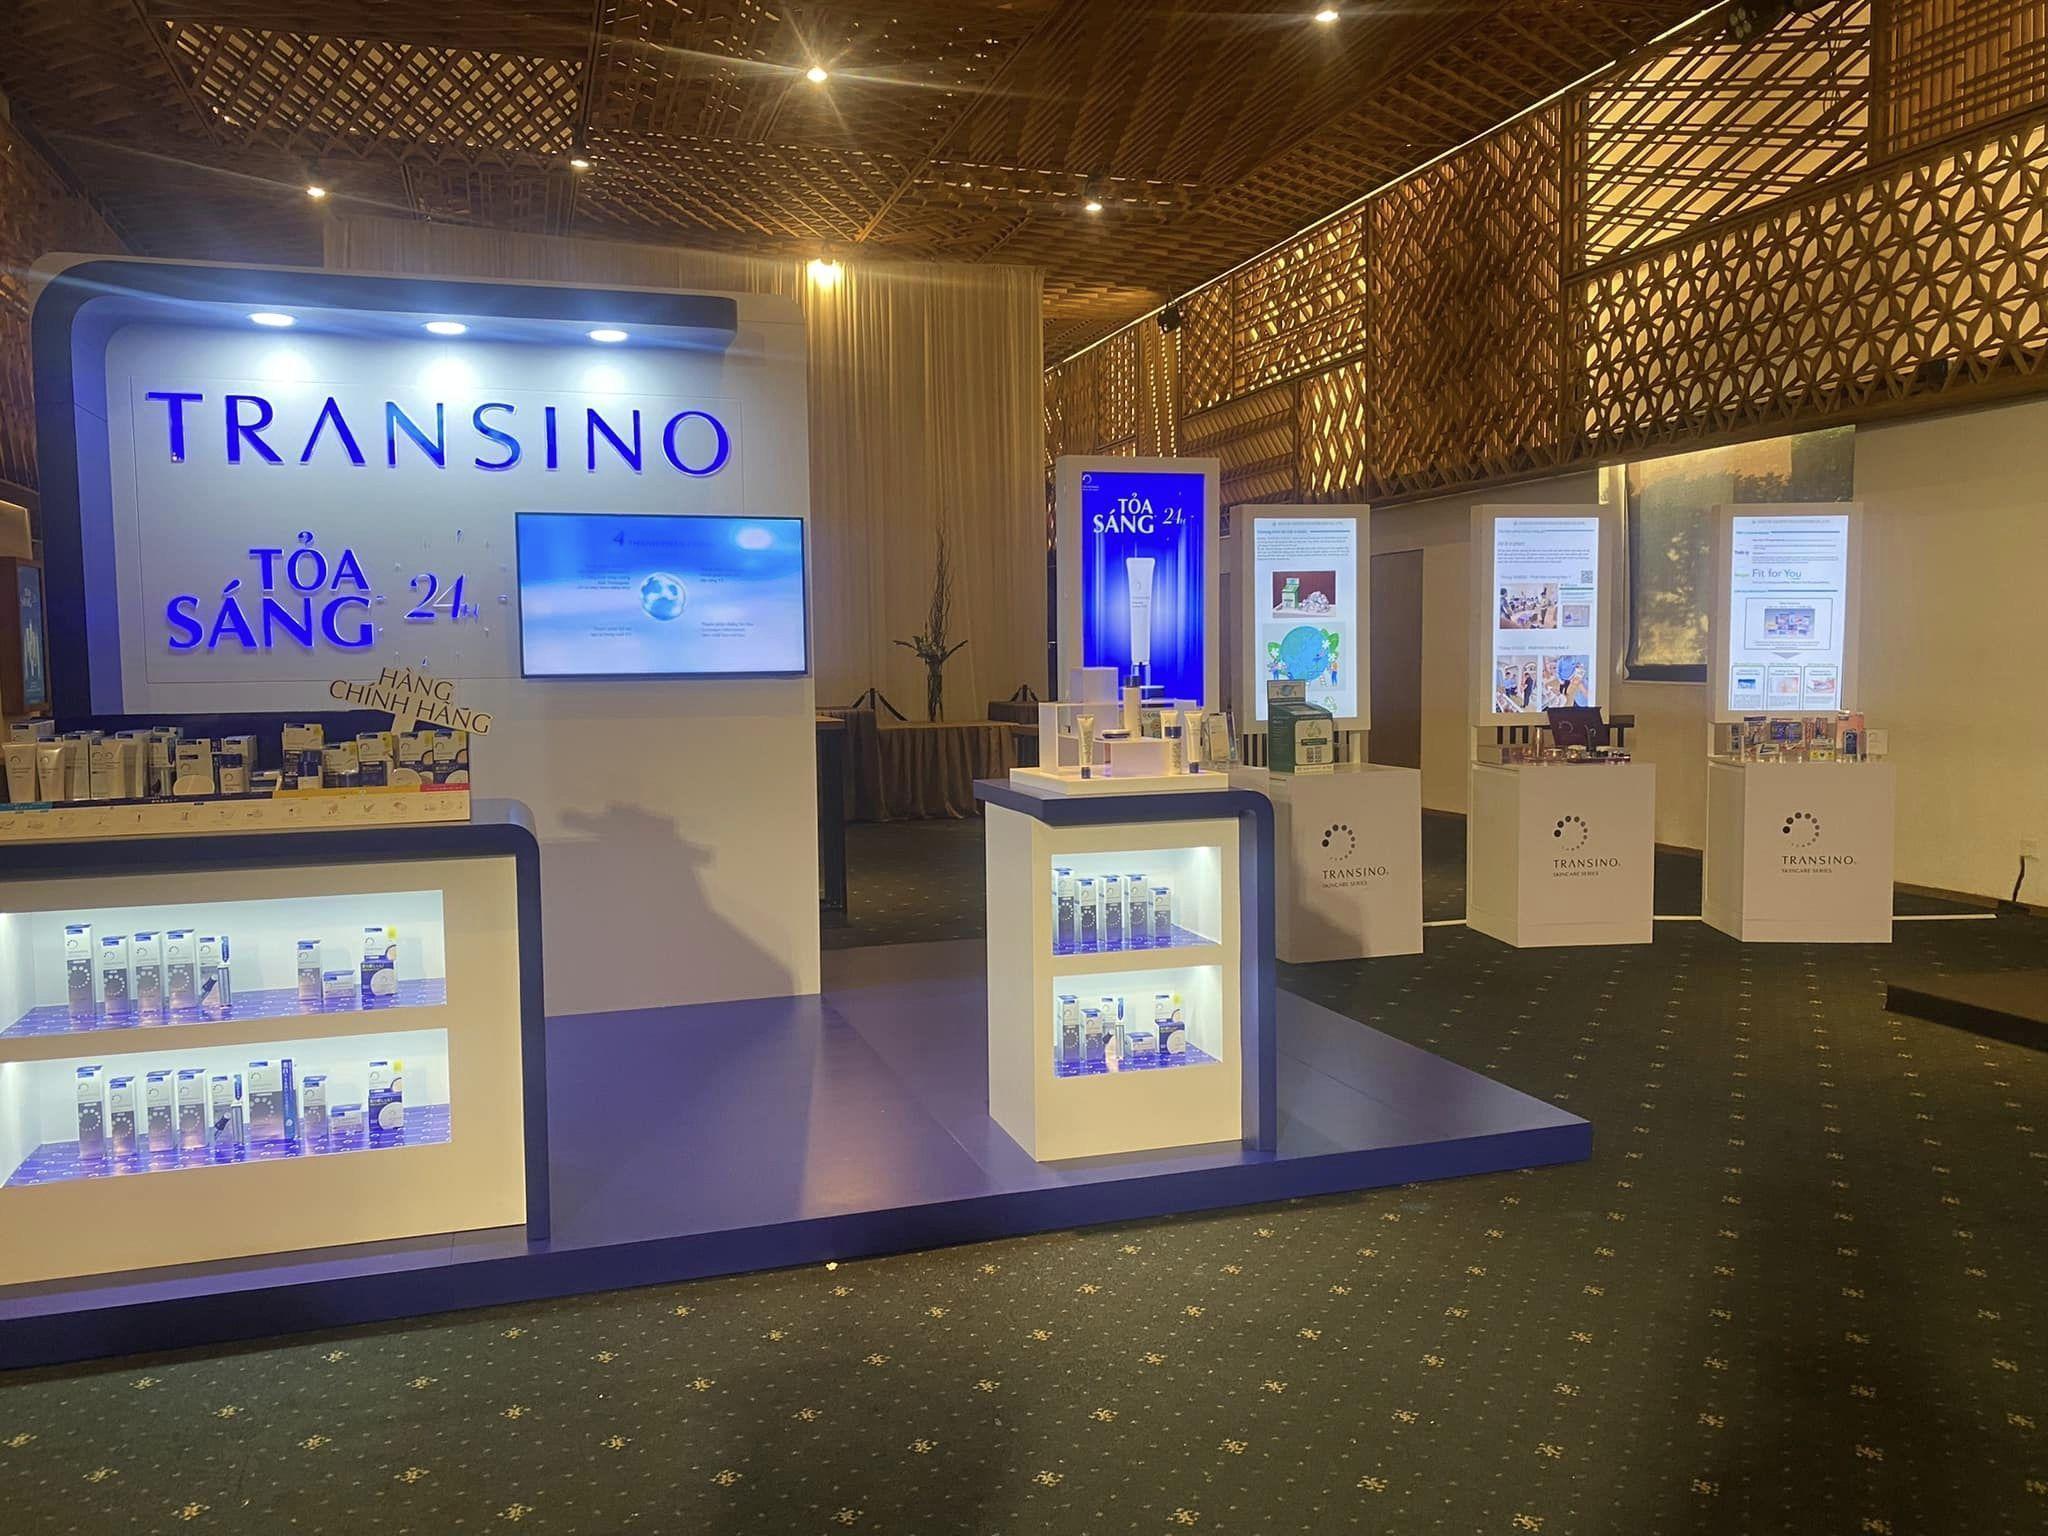 TRANSINO - Siêu phẩm dưỡng da trắng sáng nổi tiếng Nhật Bản chính thức có mặt tại Việt Nam - 5